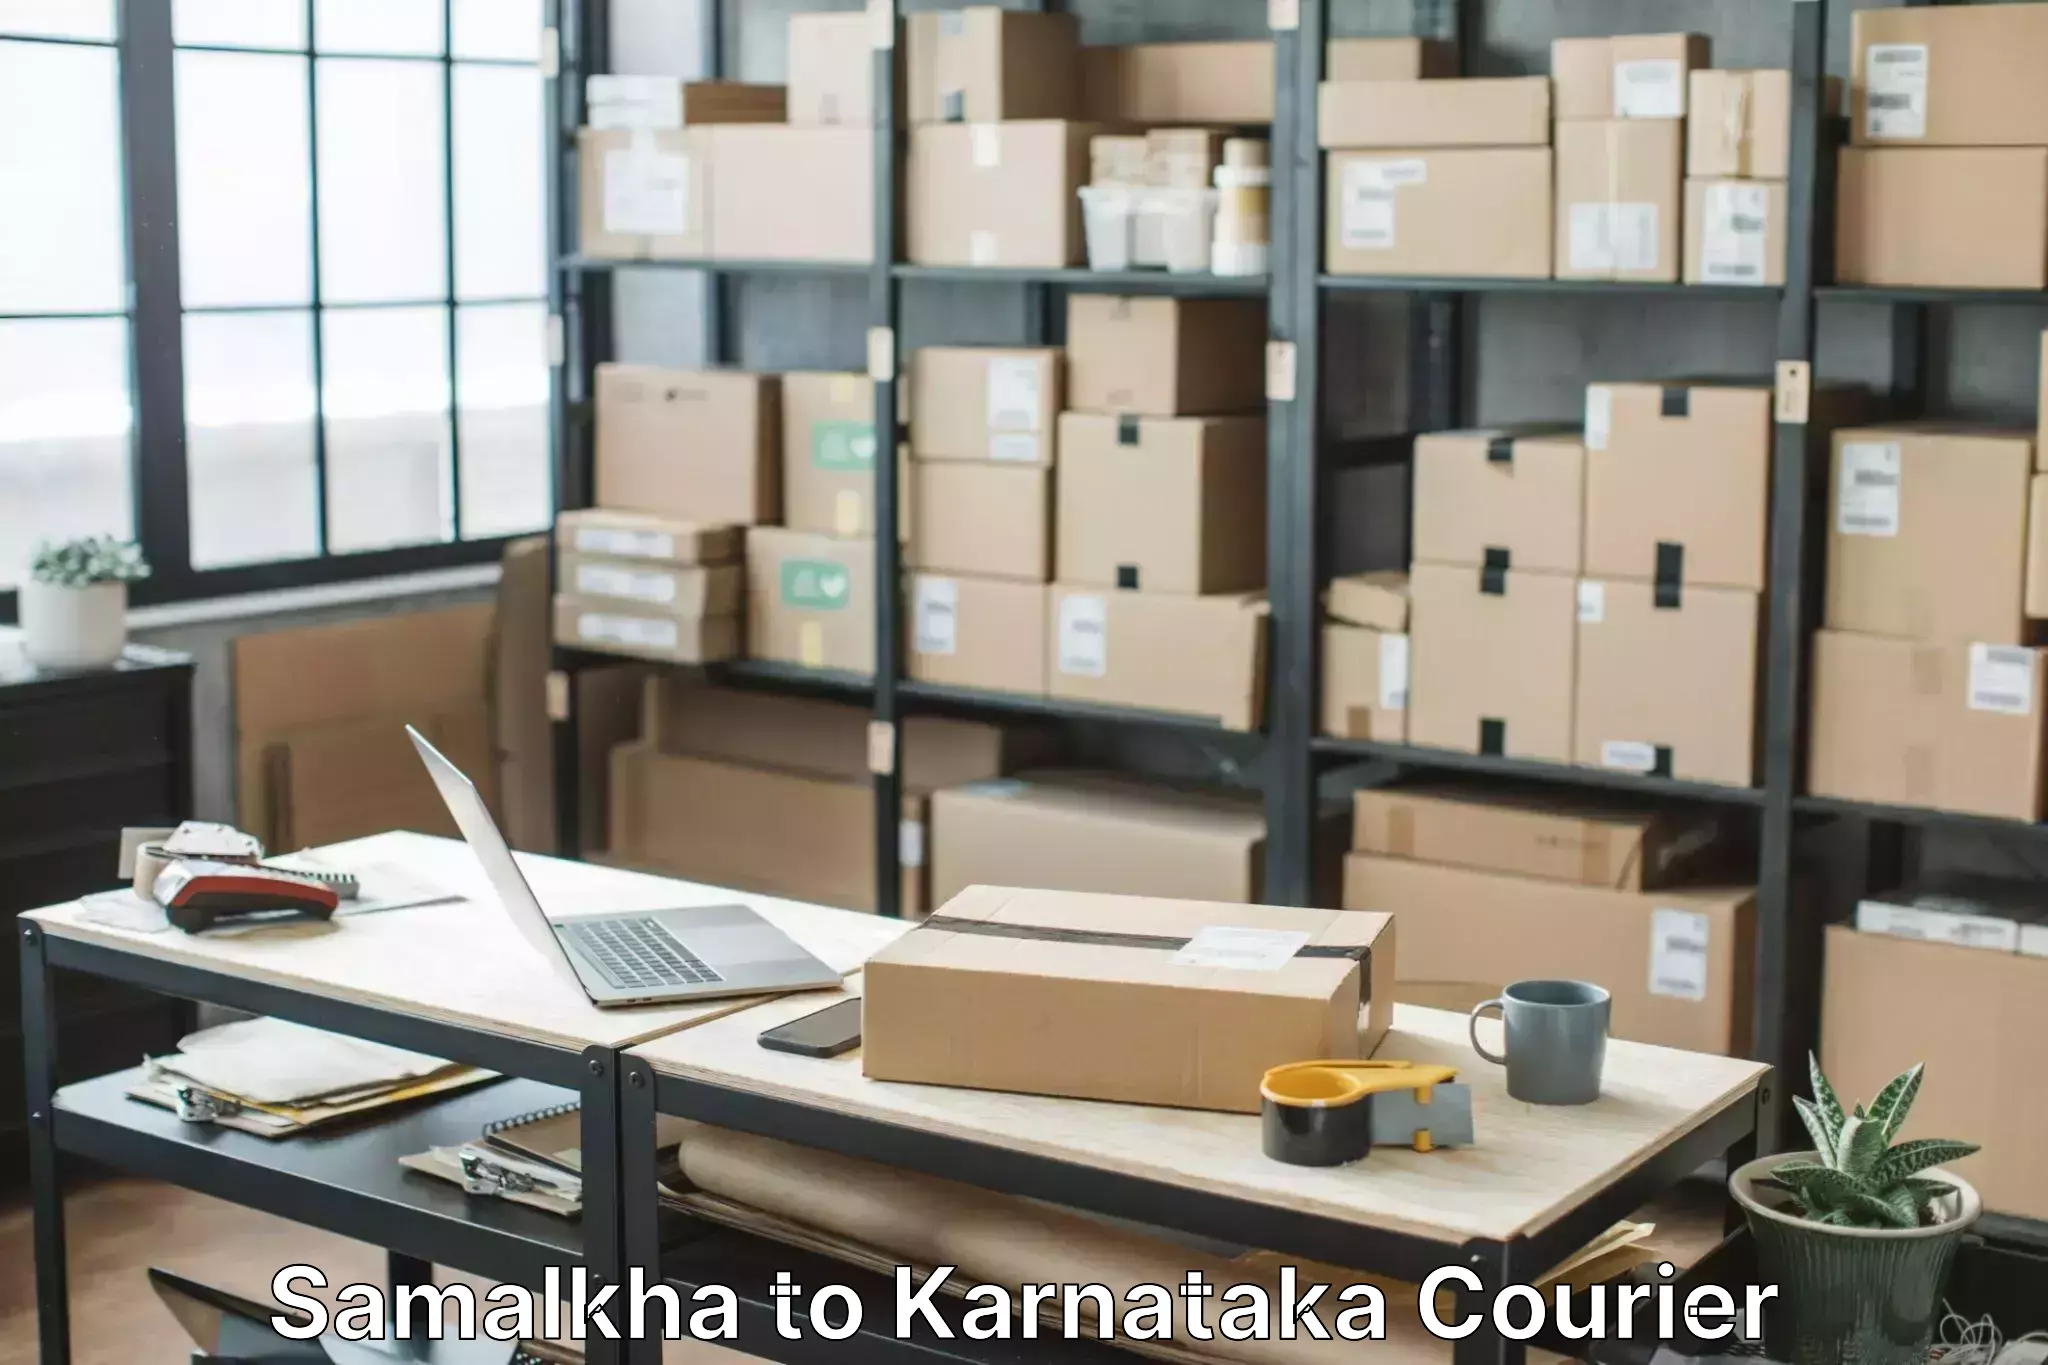 Furniture moving experts Samalkha to Karnataka